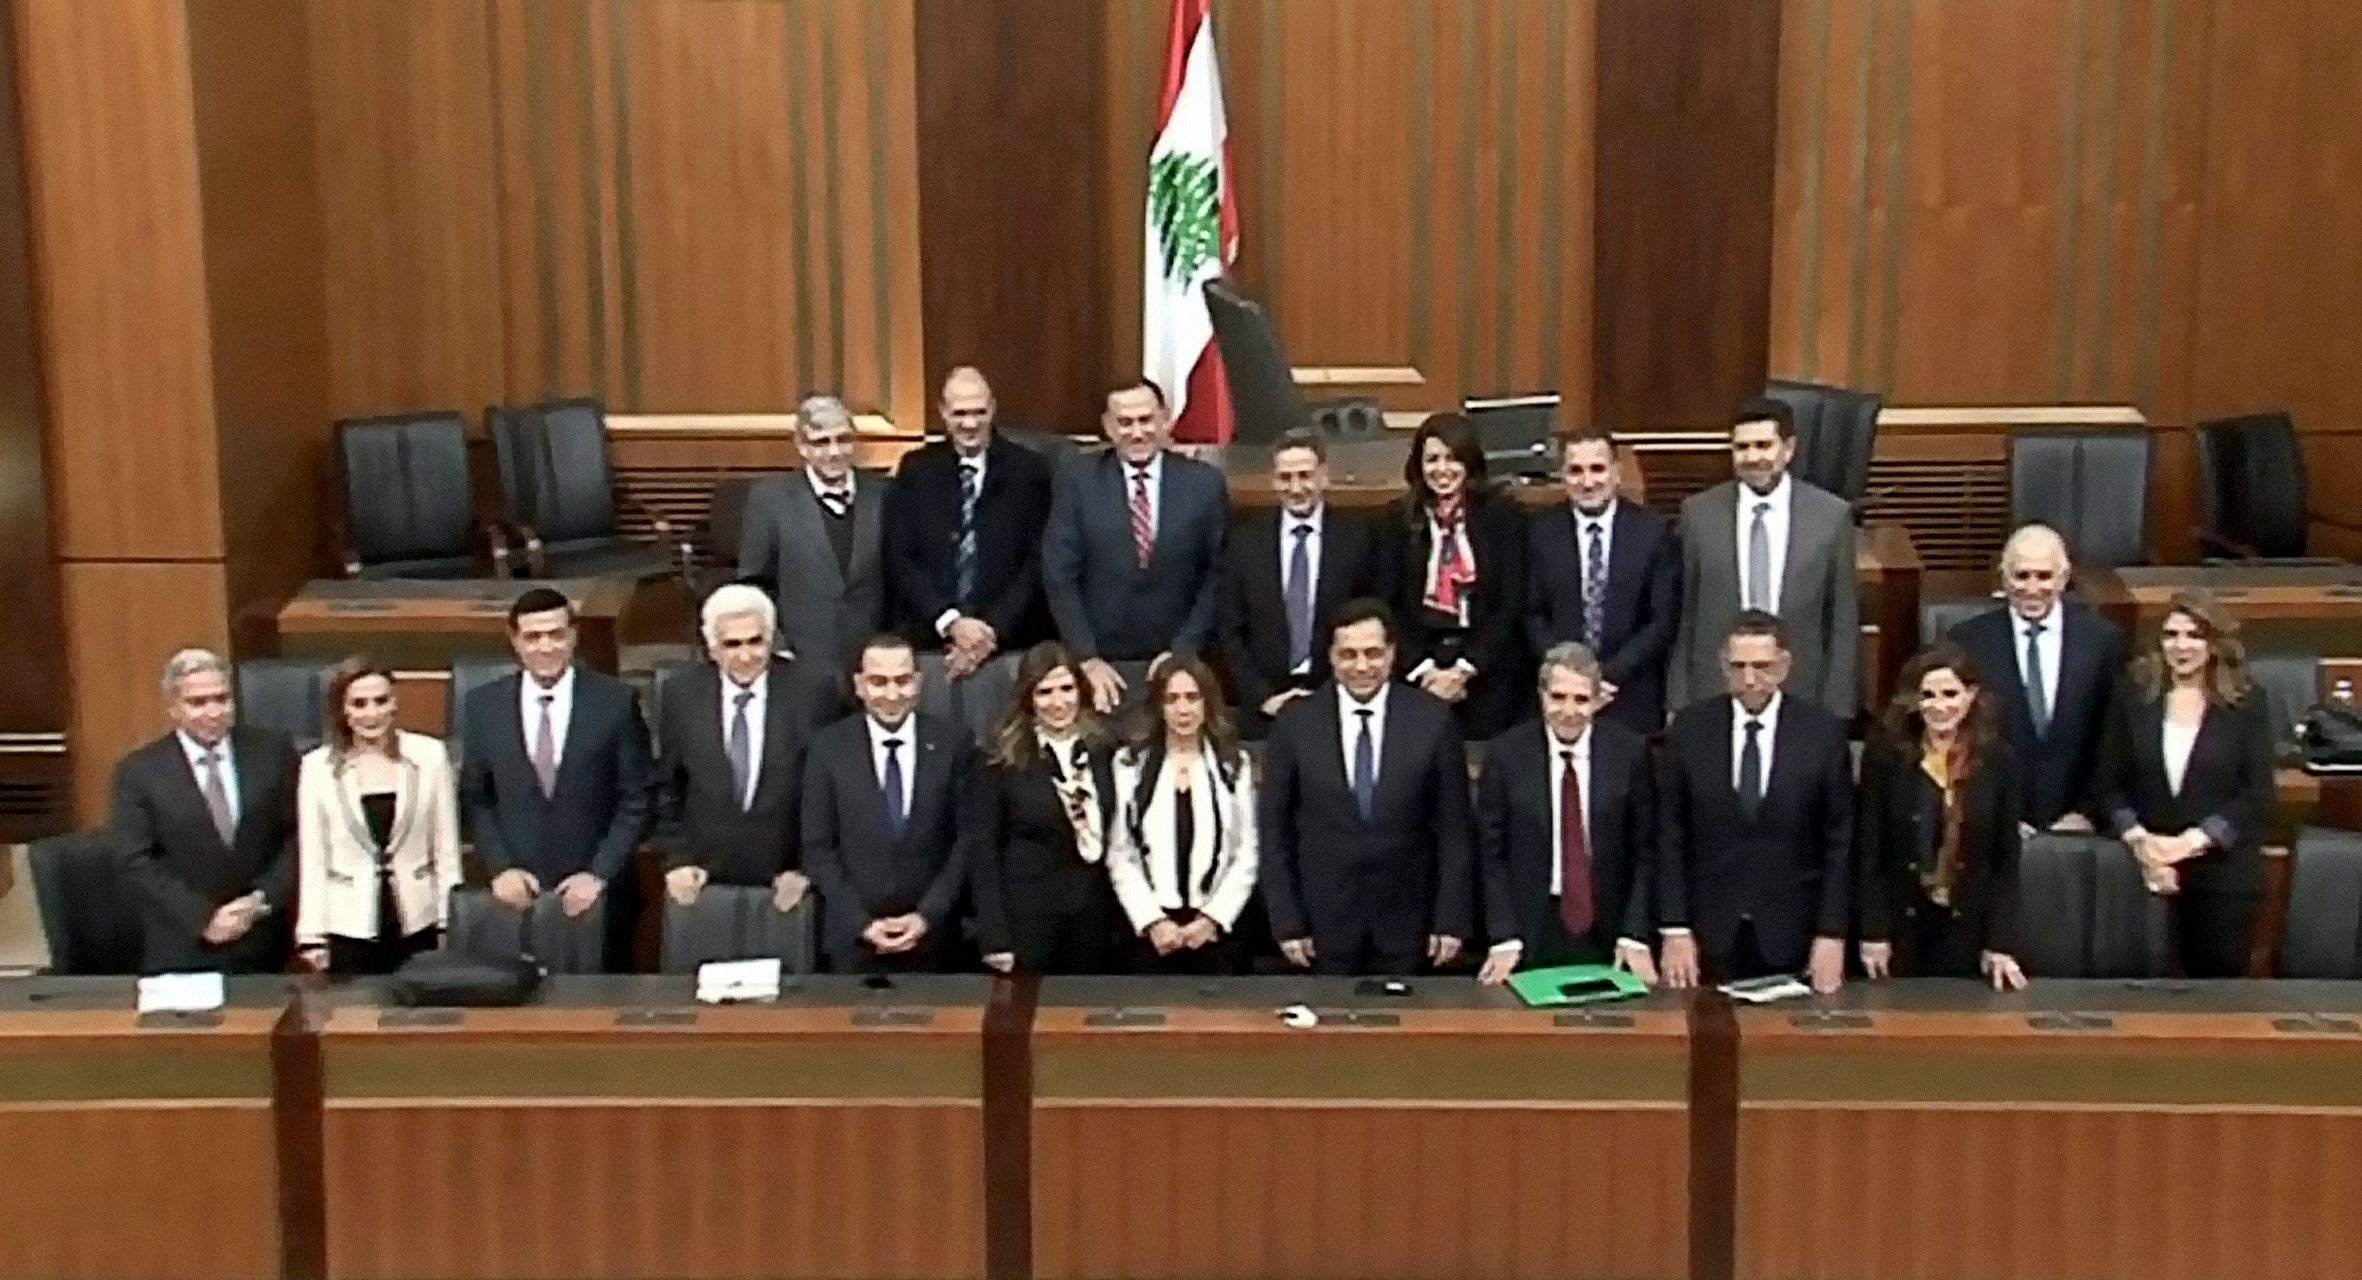 صورة النواب يؤكدون ثقتهم بالحكومة رغماً عن الرعاع الذين انتخبوهم